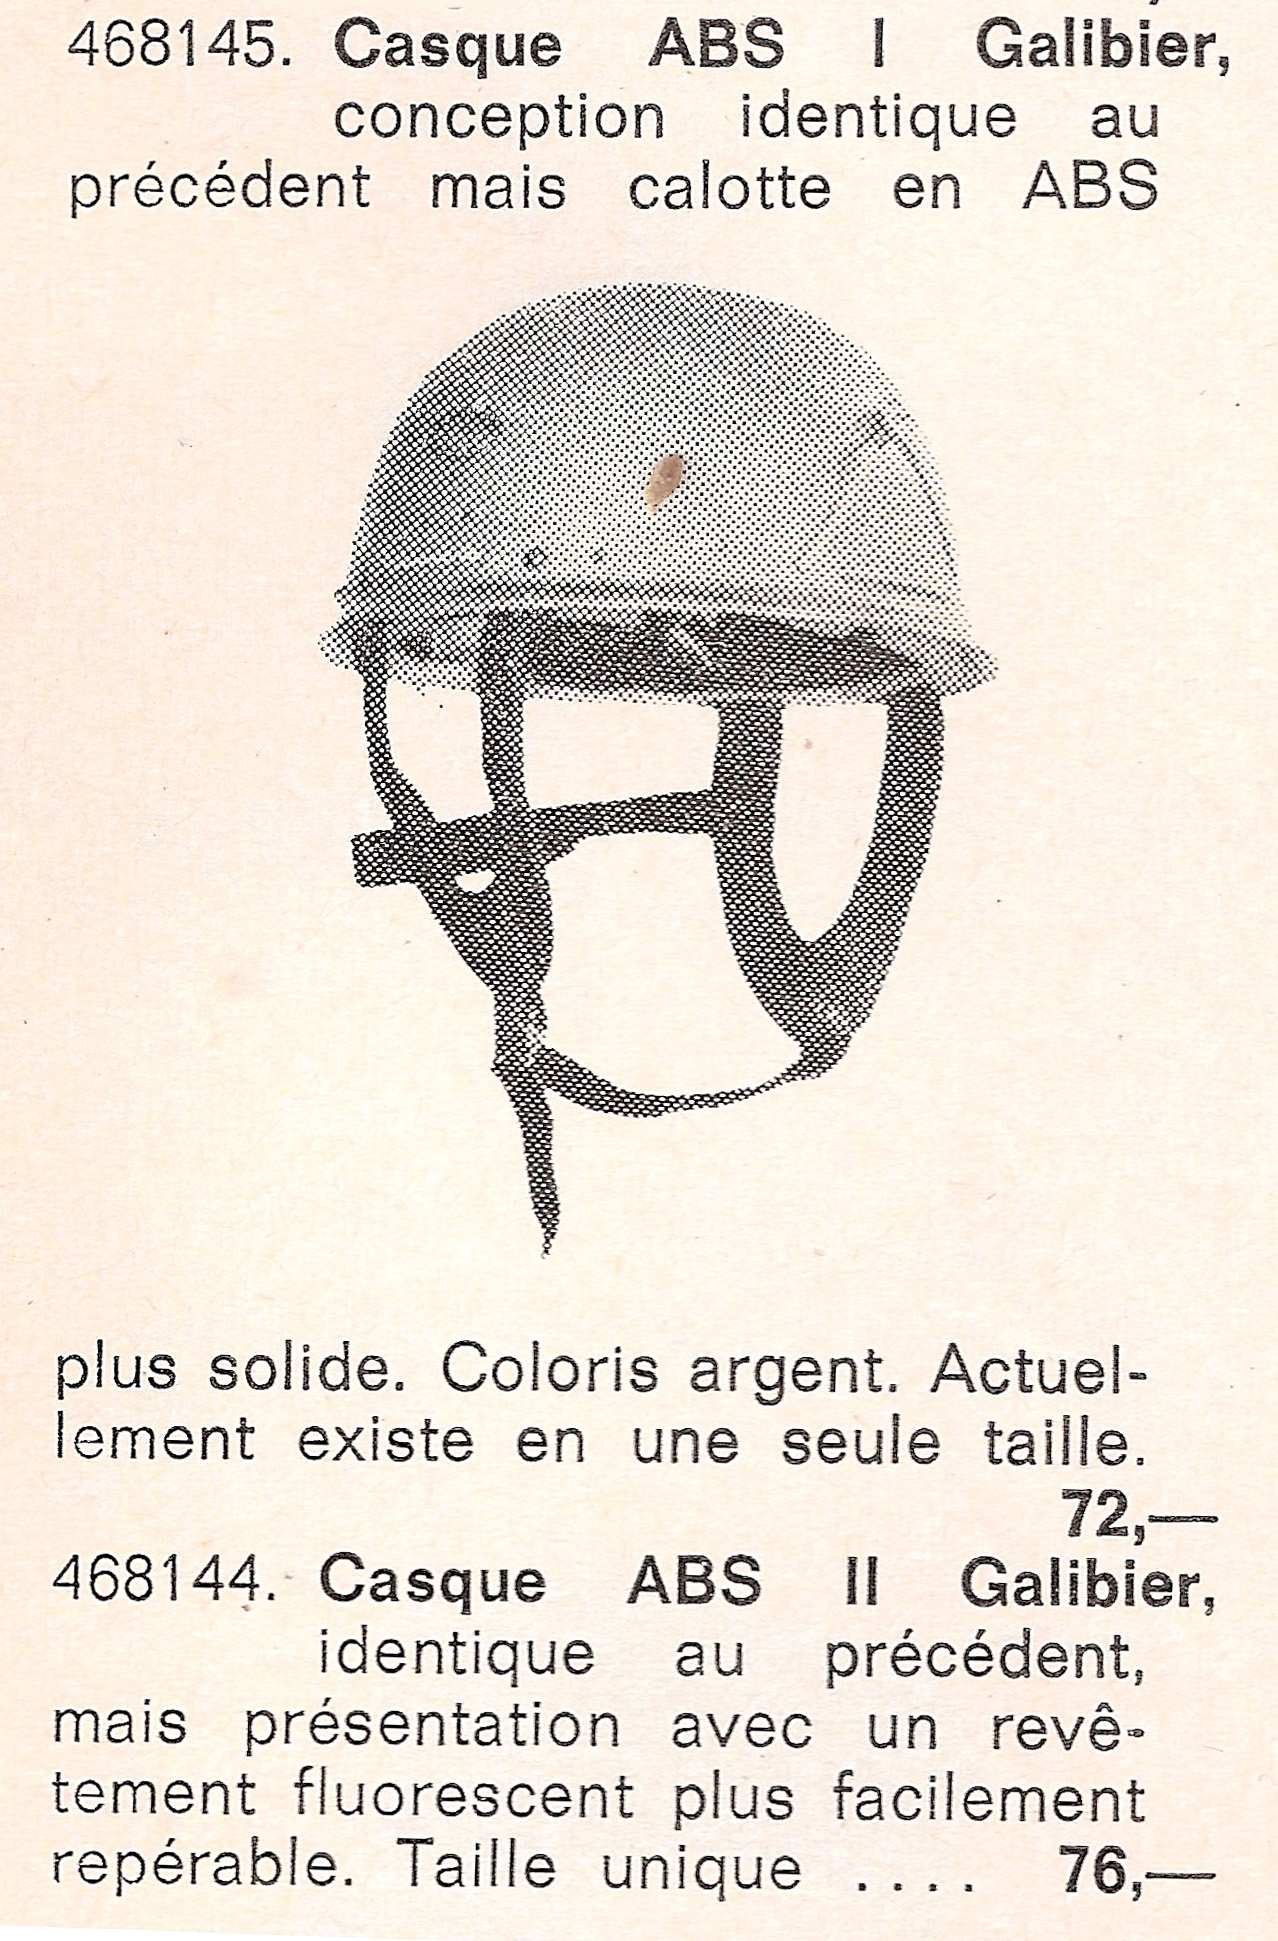 casque galibier, catalogue v.c. 1974